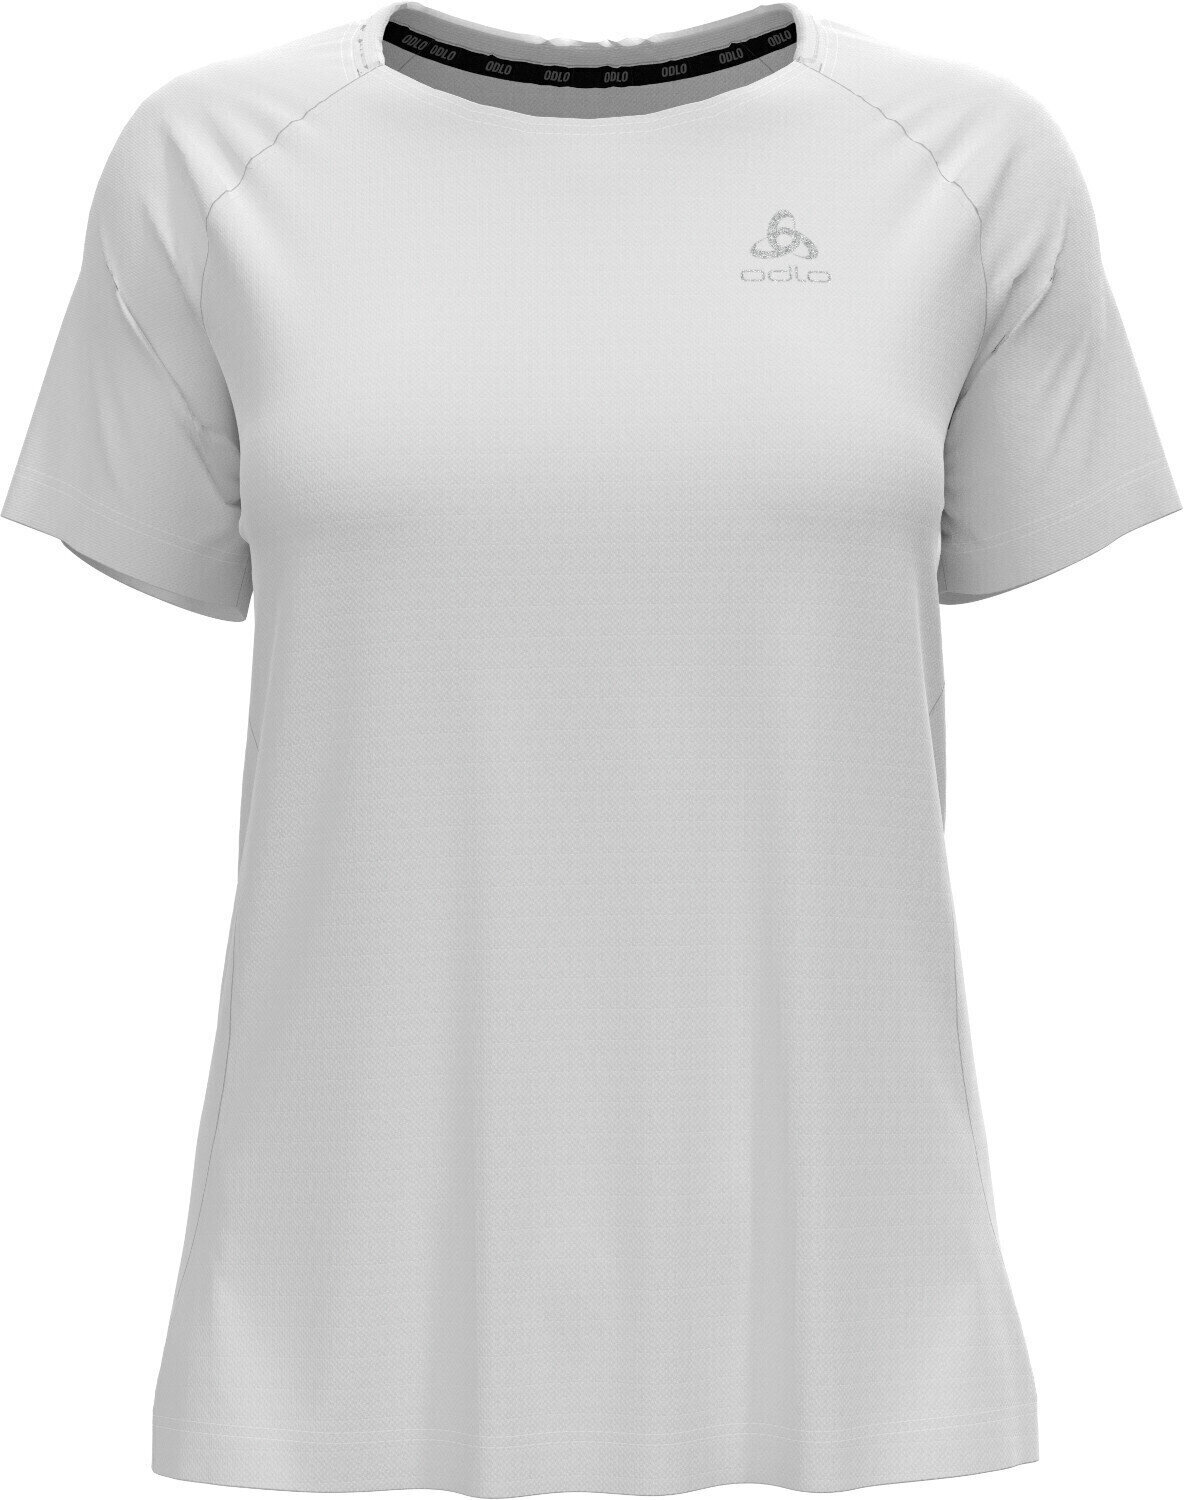 Běžecké tričko s krátkým rukávem
 Odlo Essential T-Shirt White S Běžecké tričko s krátkým rukávem